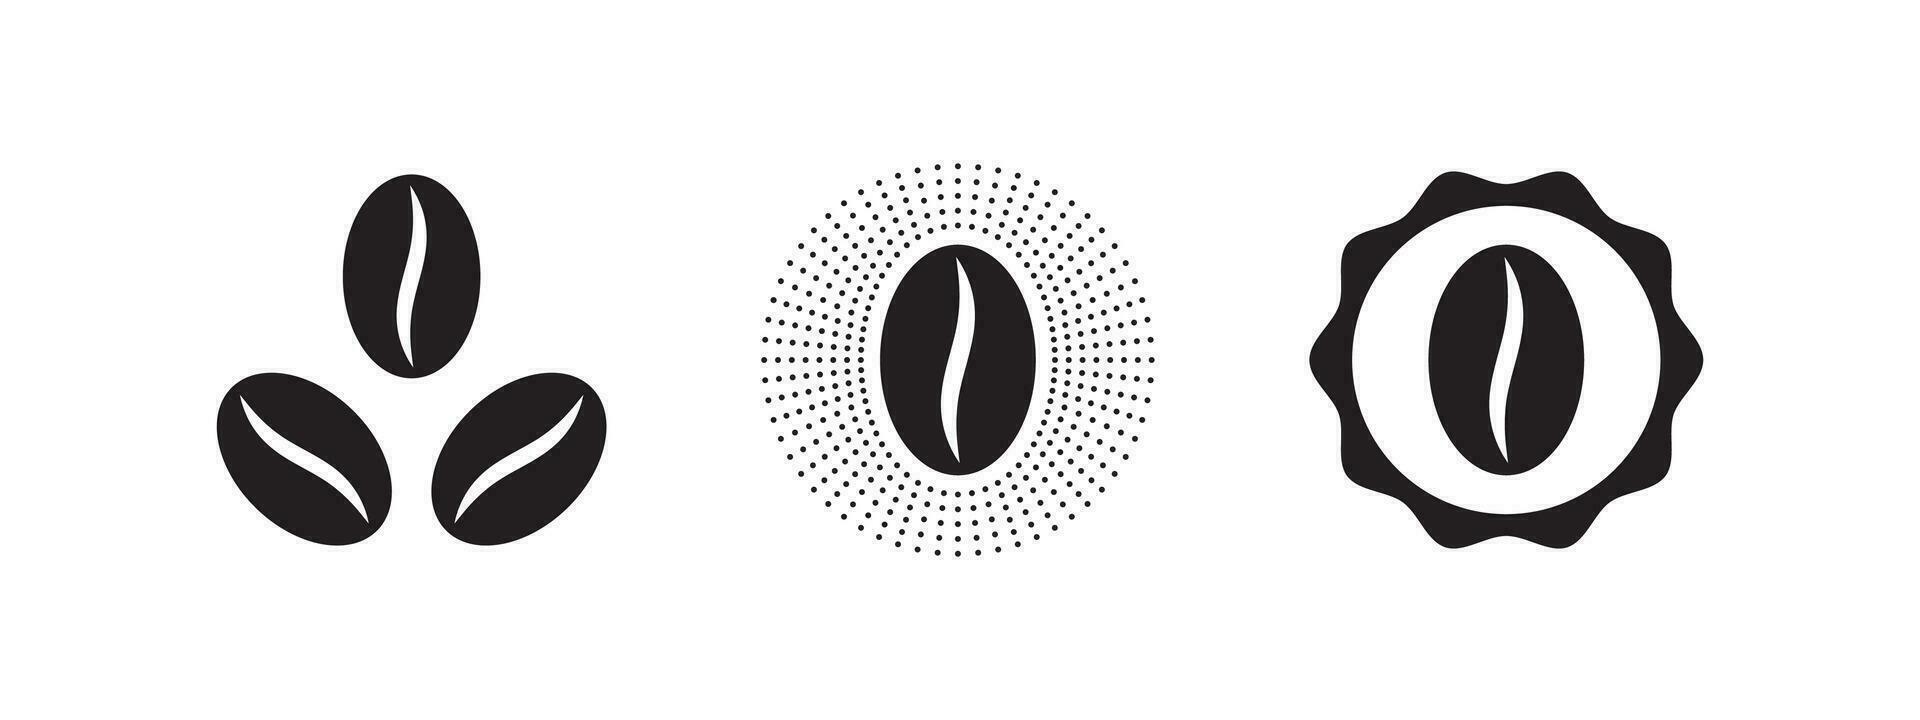 caffè fagioli. caffè badge e icone. design elementi. vettore scalabile grafica